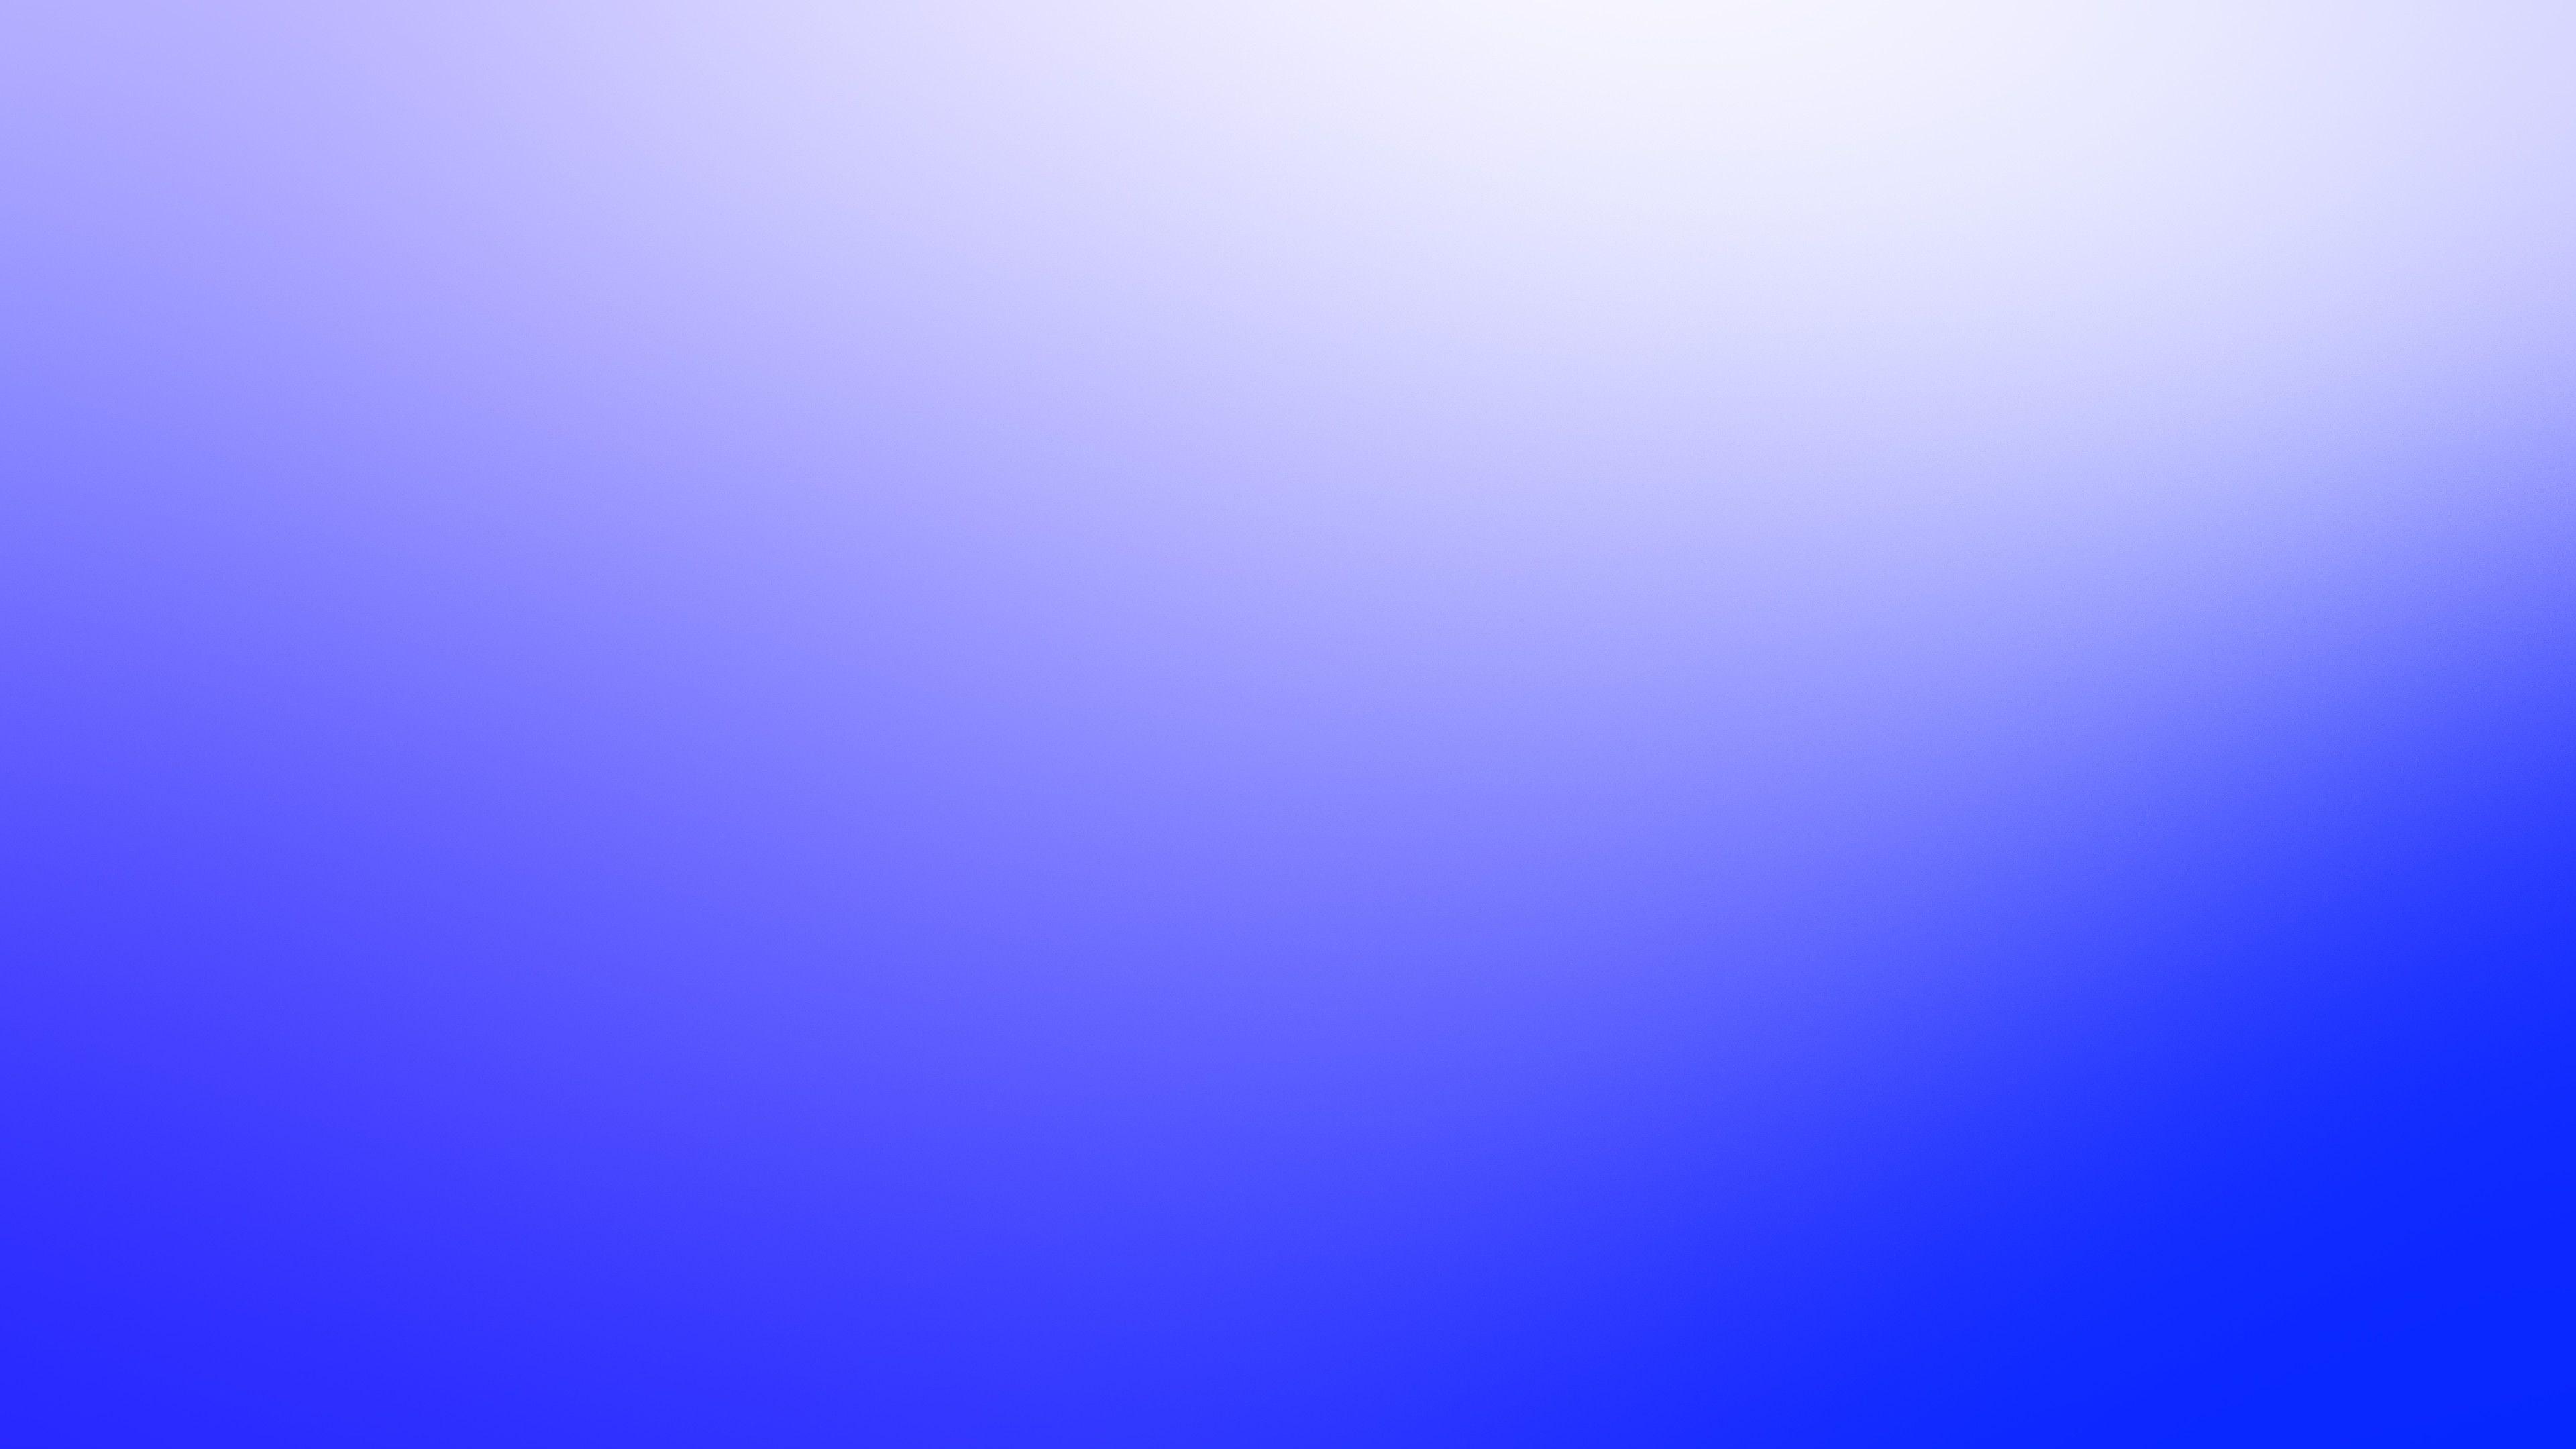 3840x2160 Hình nền 4k Blue Blur Color 4k 4k Wallpaper, Blue Wallpaper, Blur Wallpaper, Hình nền, Hình nền hd, Hình nền đơn giản